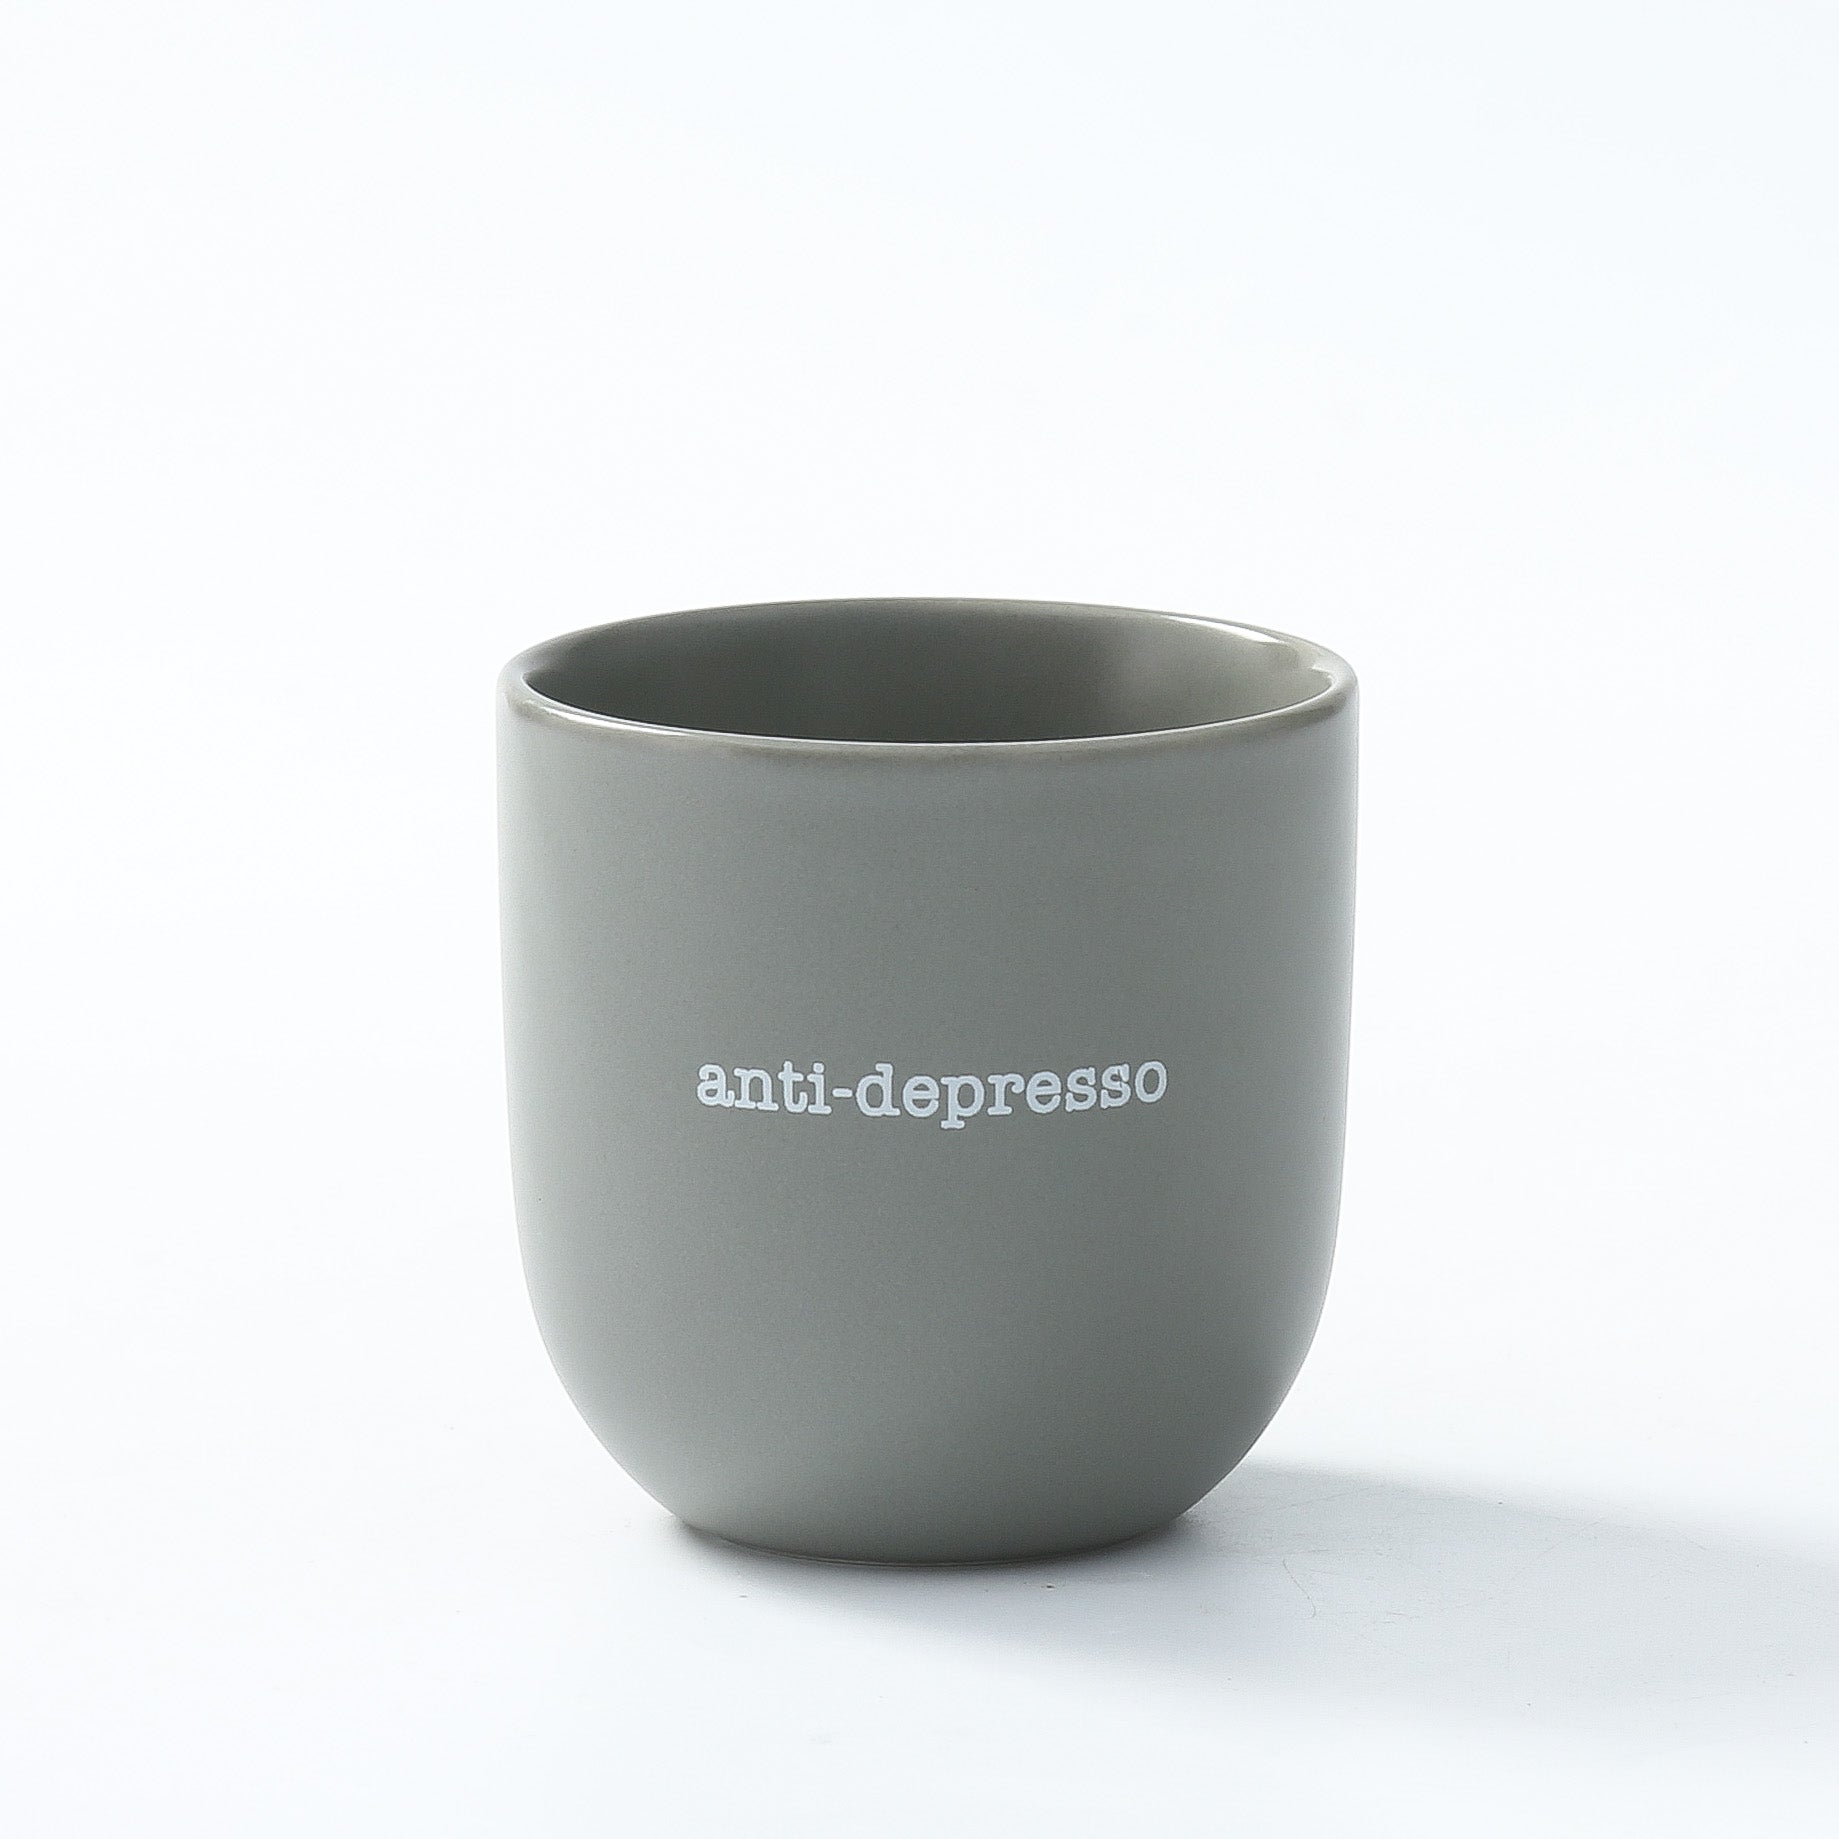 Skodelica - Anti-depresso, light grey